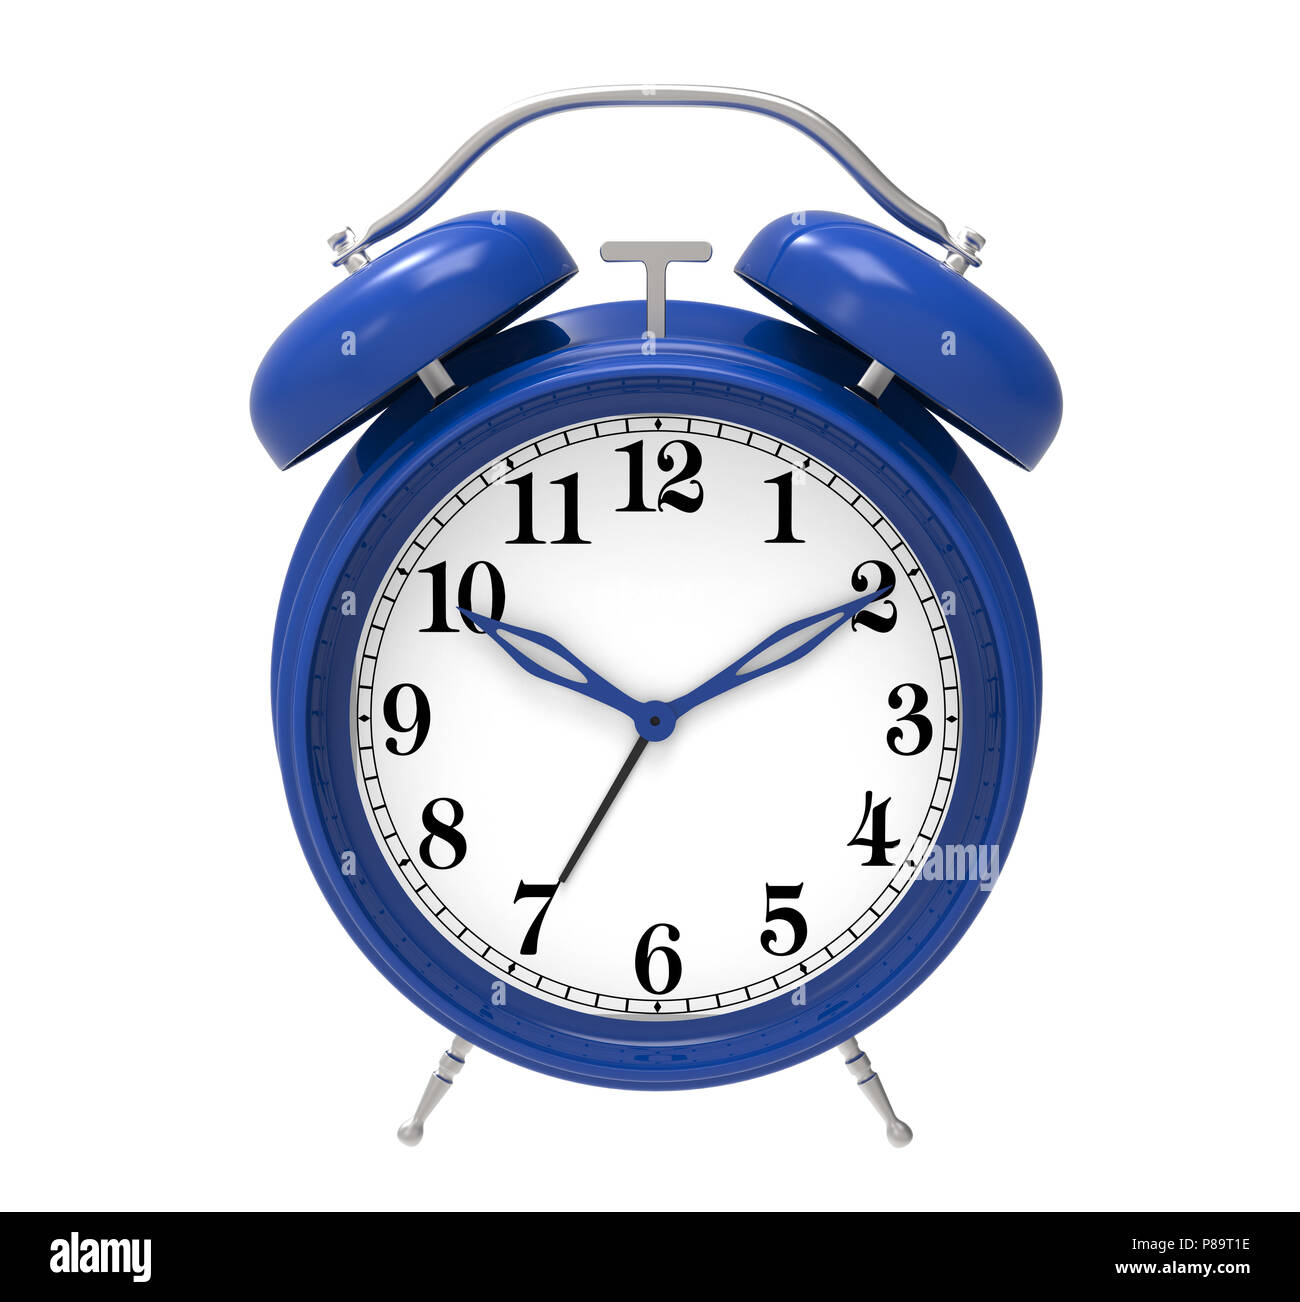 blue alarm clock isolated on white background Stock Photo